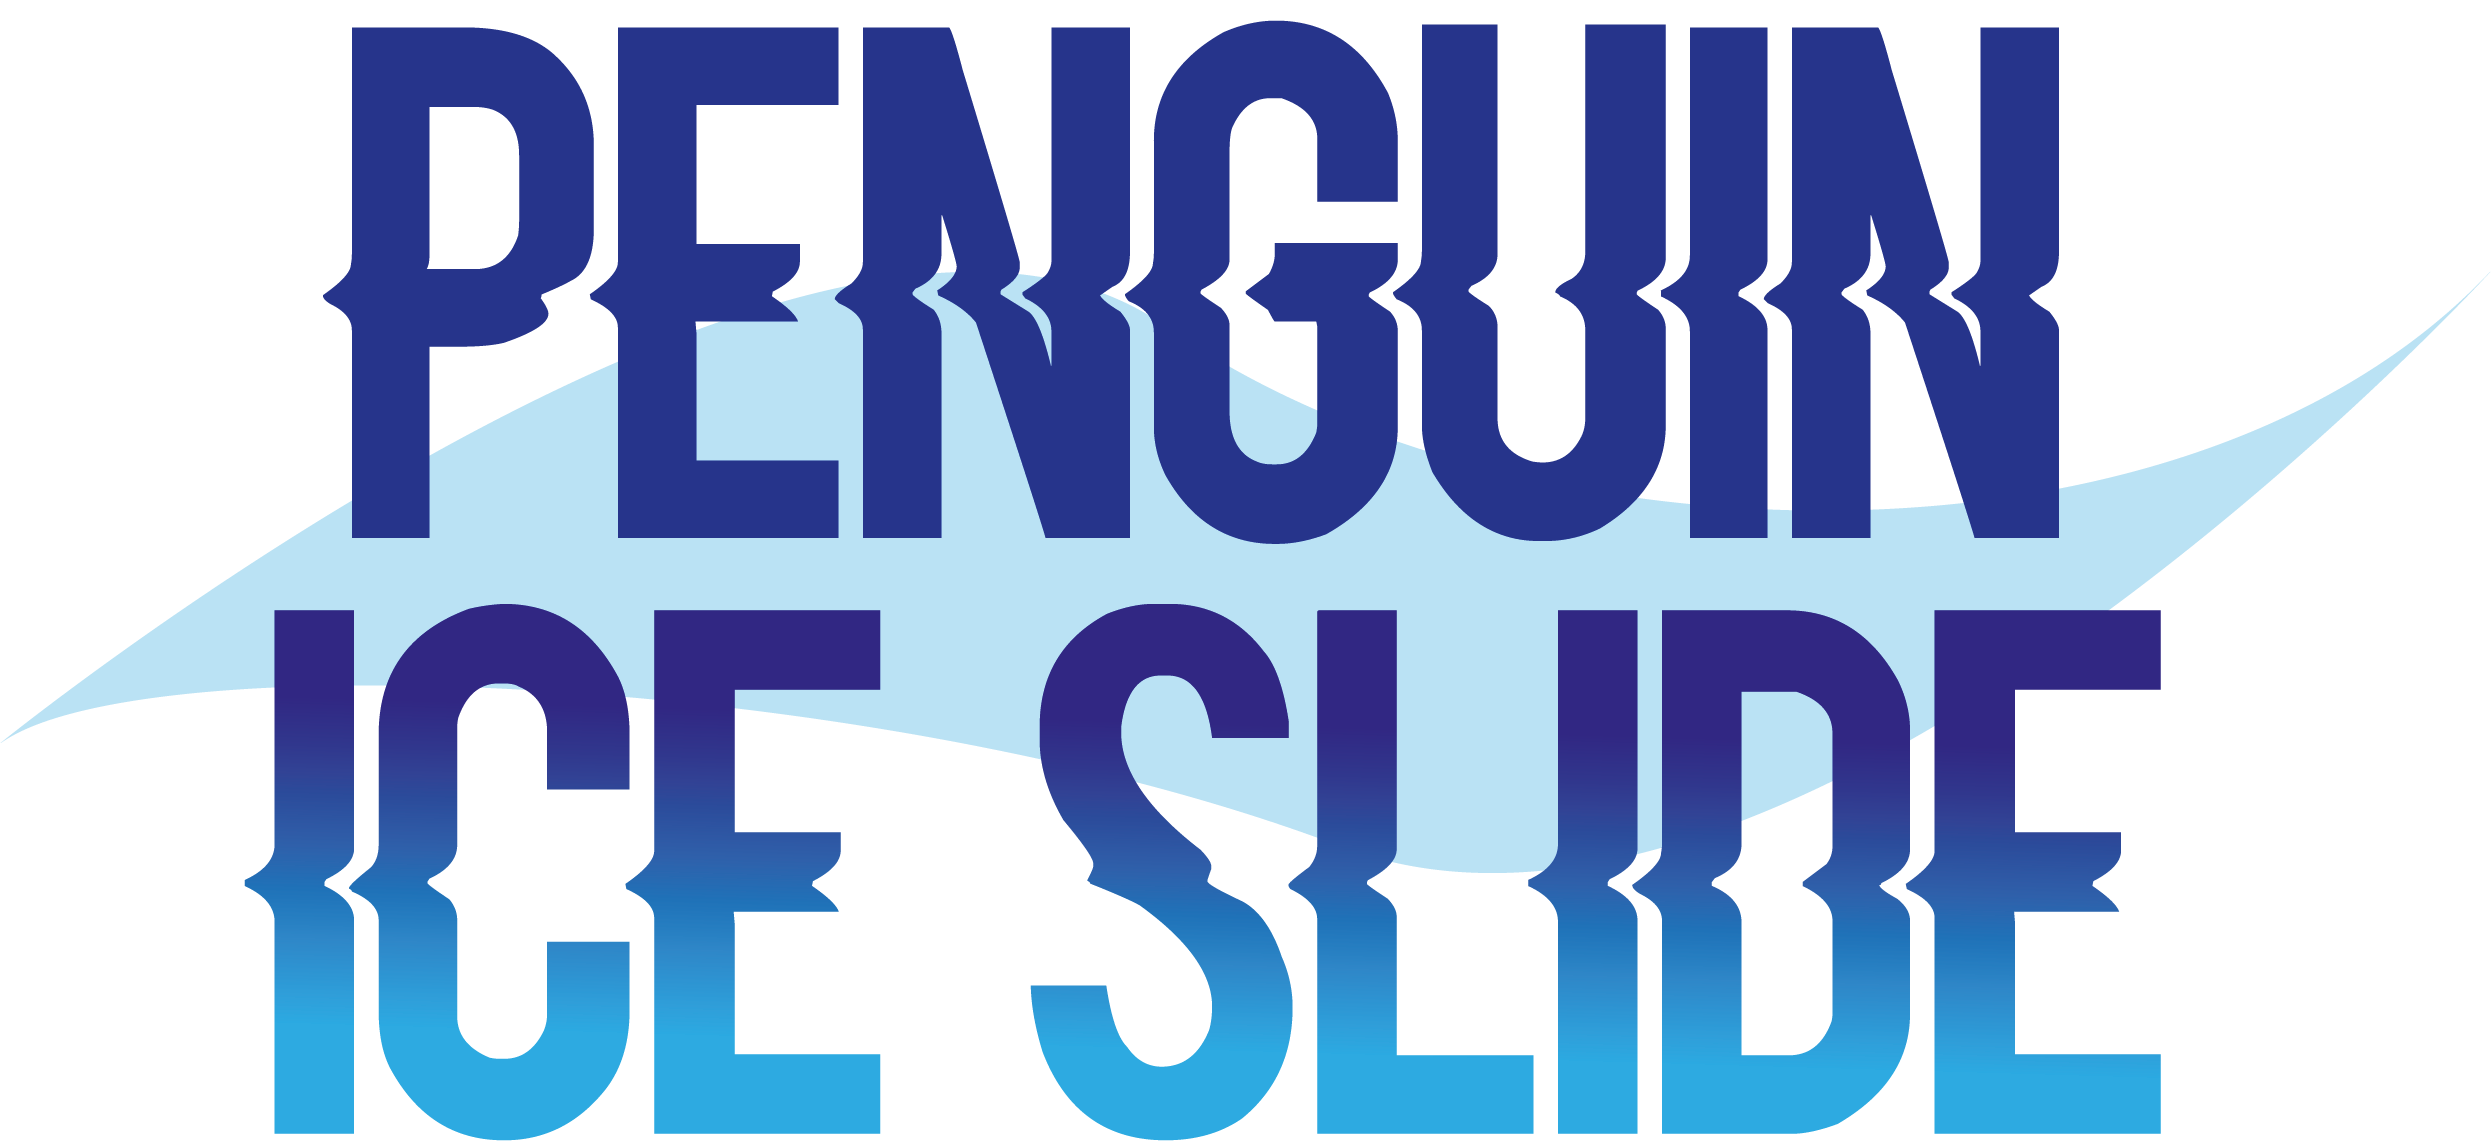 Penguin Ice Slide